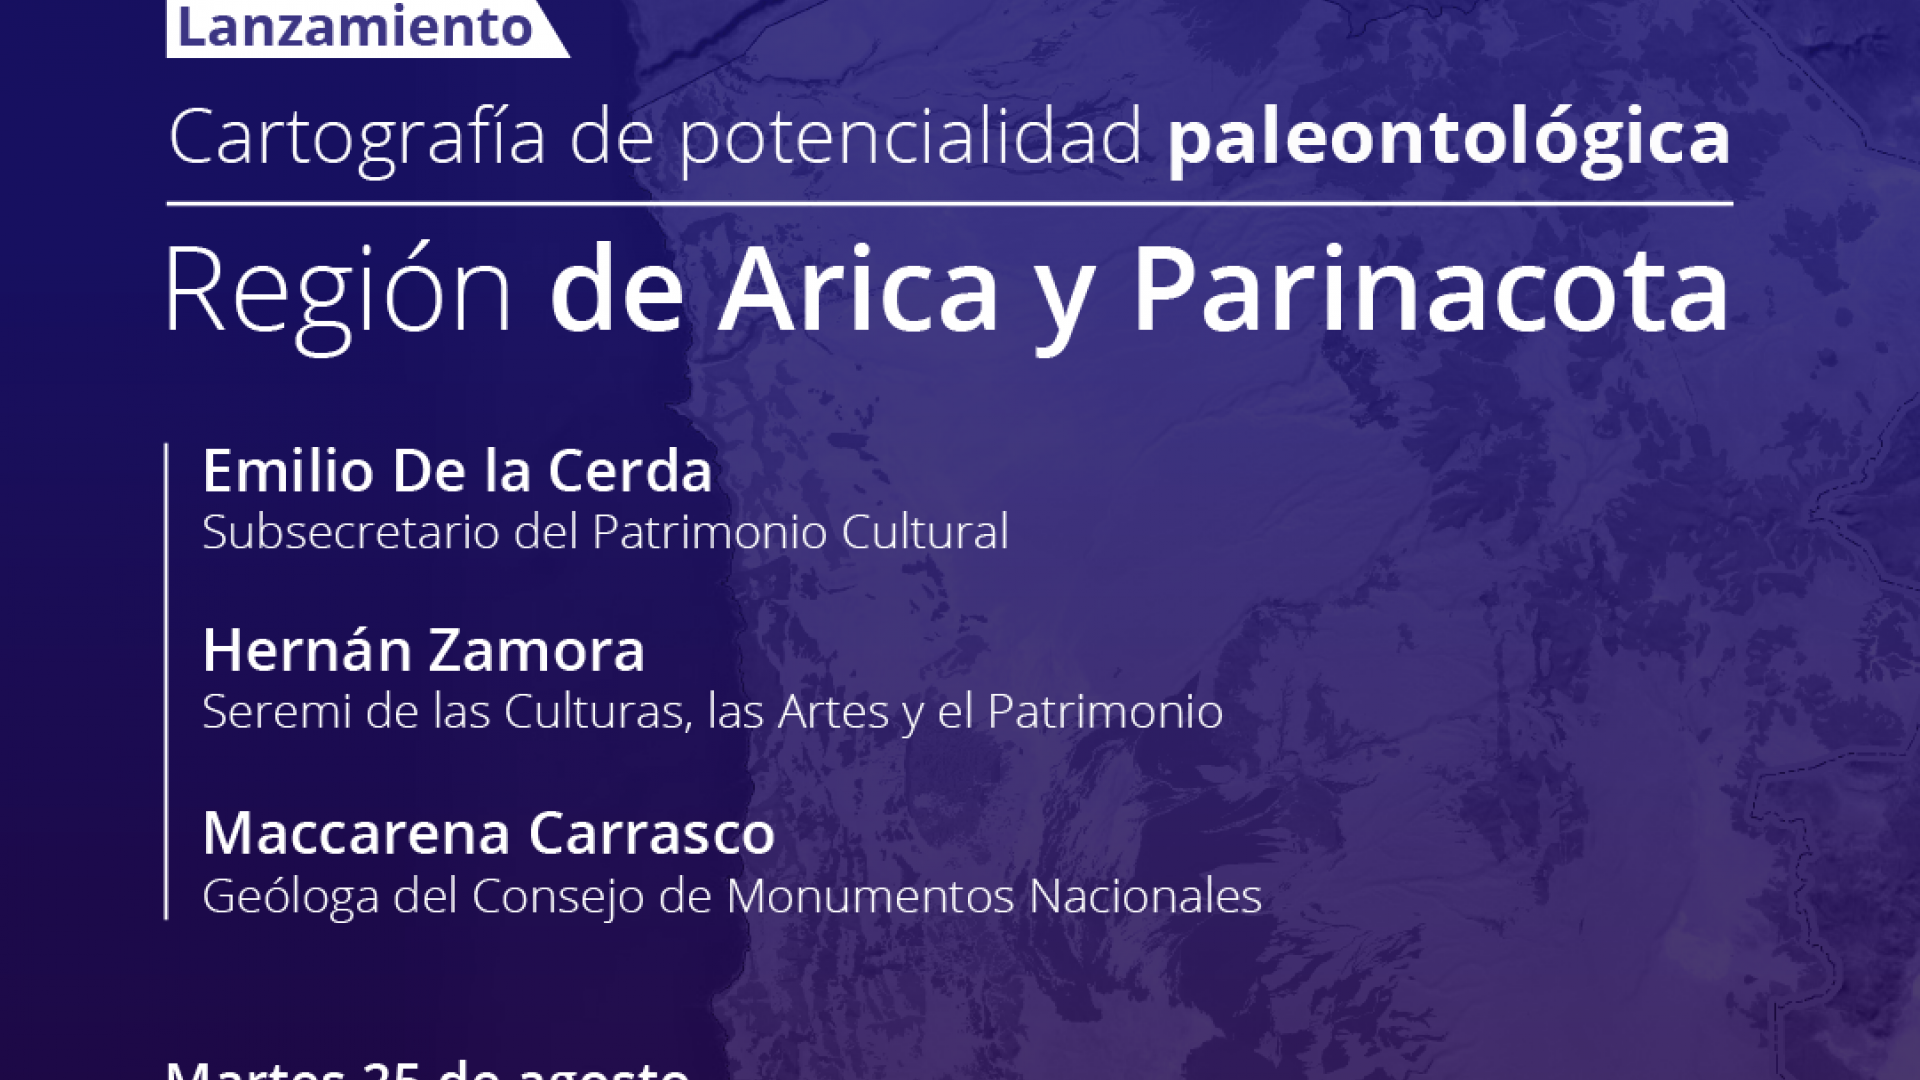 Imagen de Cartografía de potencialidad paleontológica de la Región de Arica y Parinacota